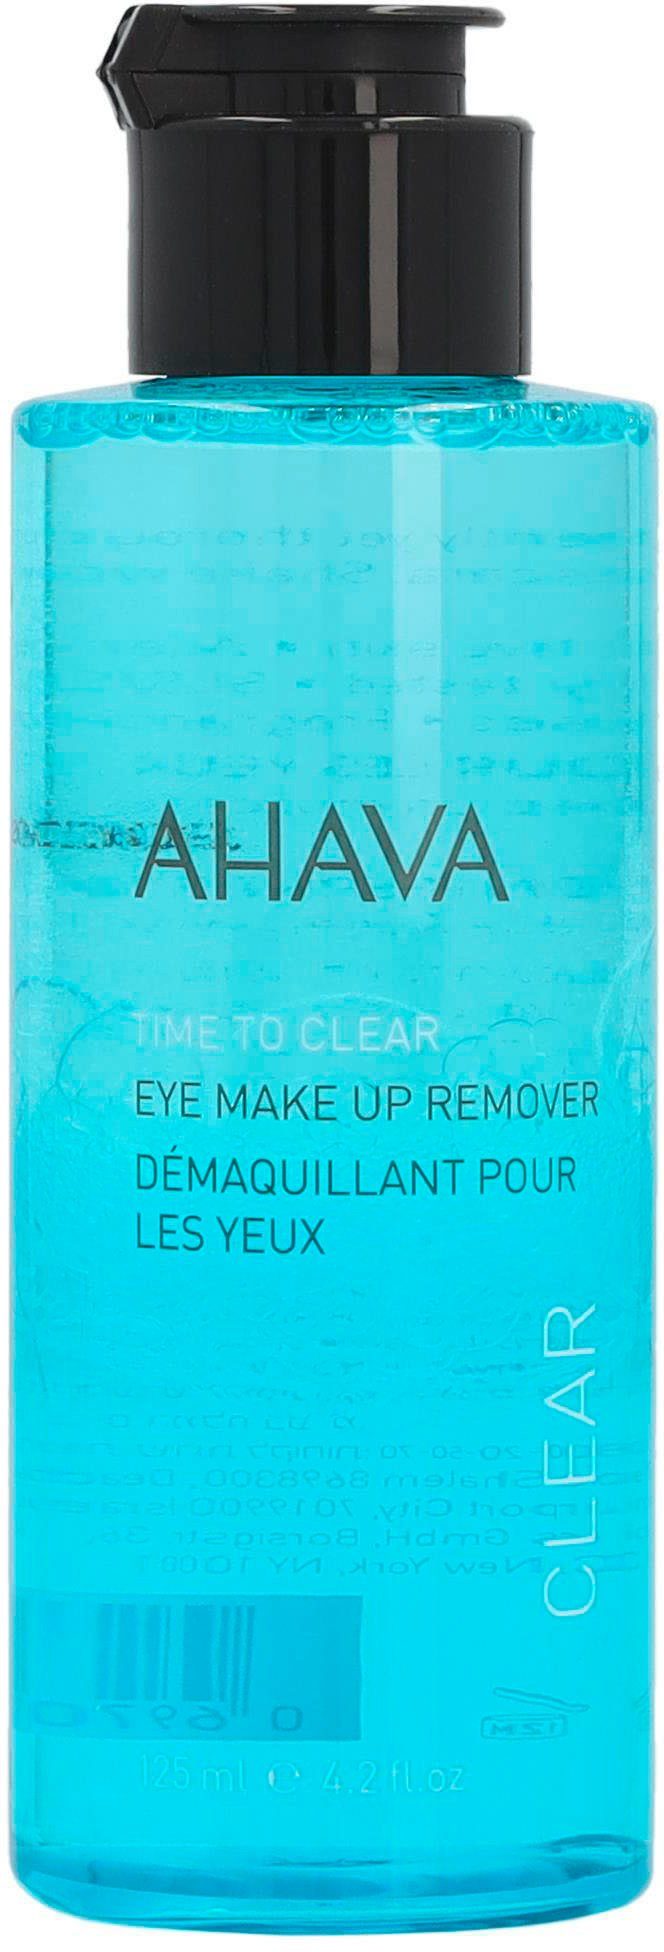 Eye Clear & To Remover, Ohne AHAVA Time Parabene Duftstoffe Augen-Make-up-Entferner Makeup